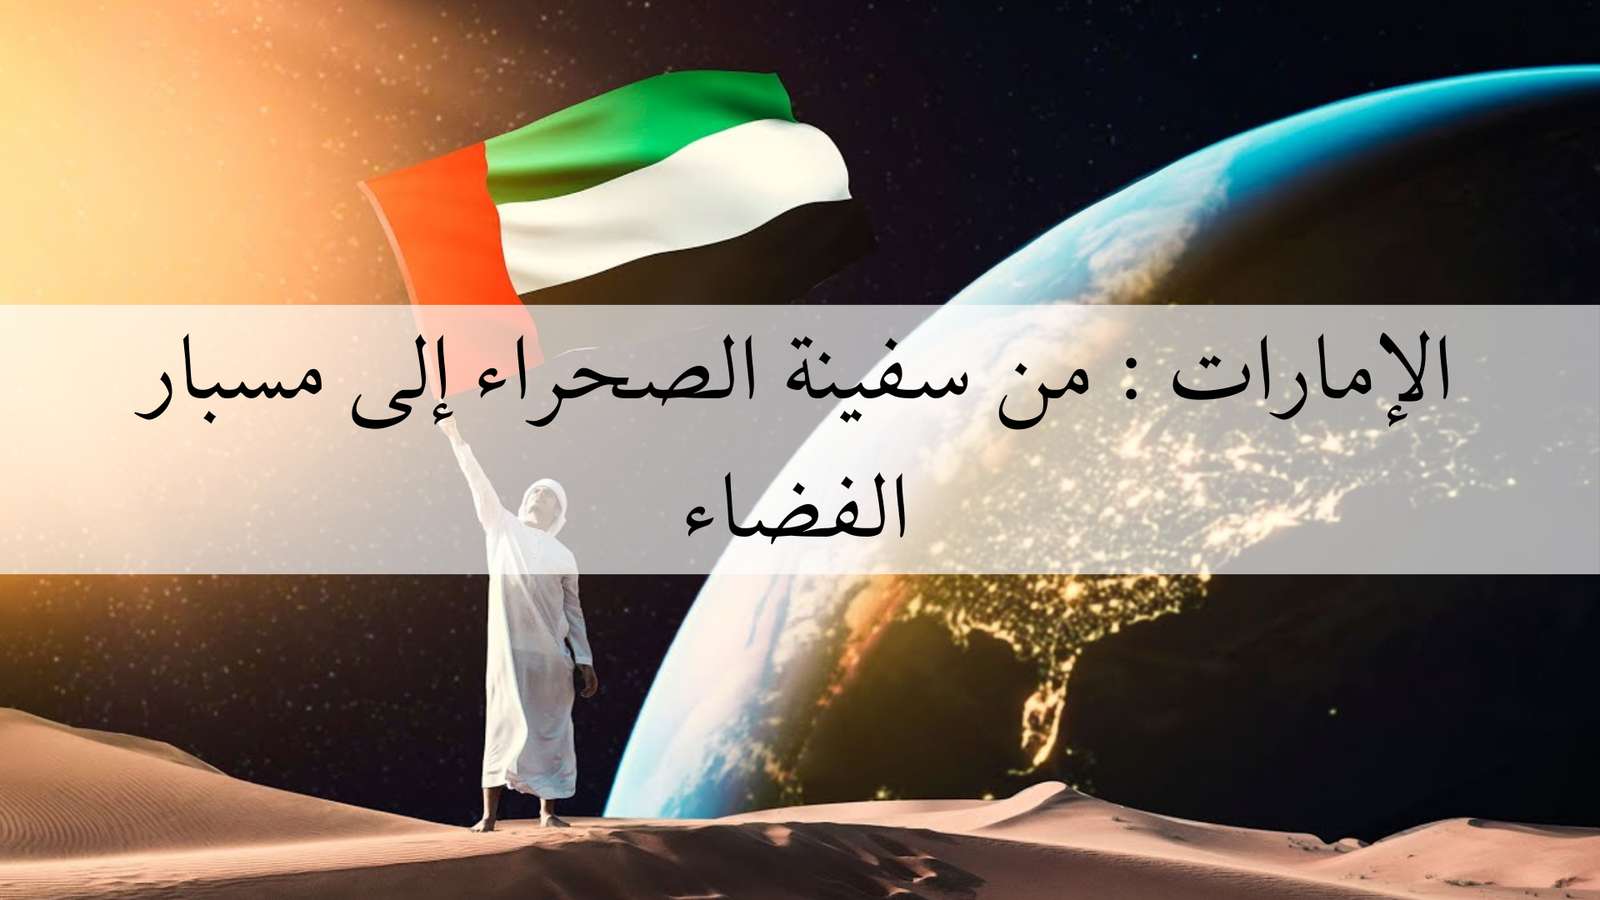 الإمارات: من سفينة الصحراء إلى مسبار الفضاء puzzle en ligne à partir d'une photo